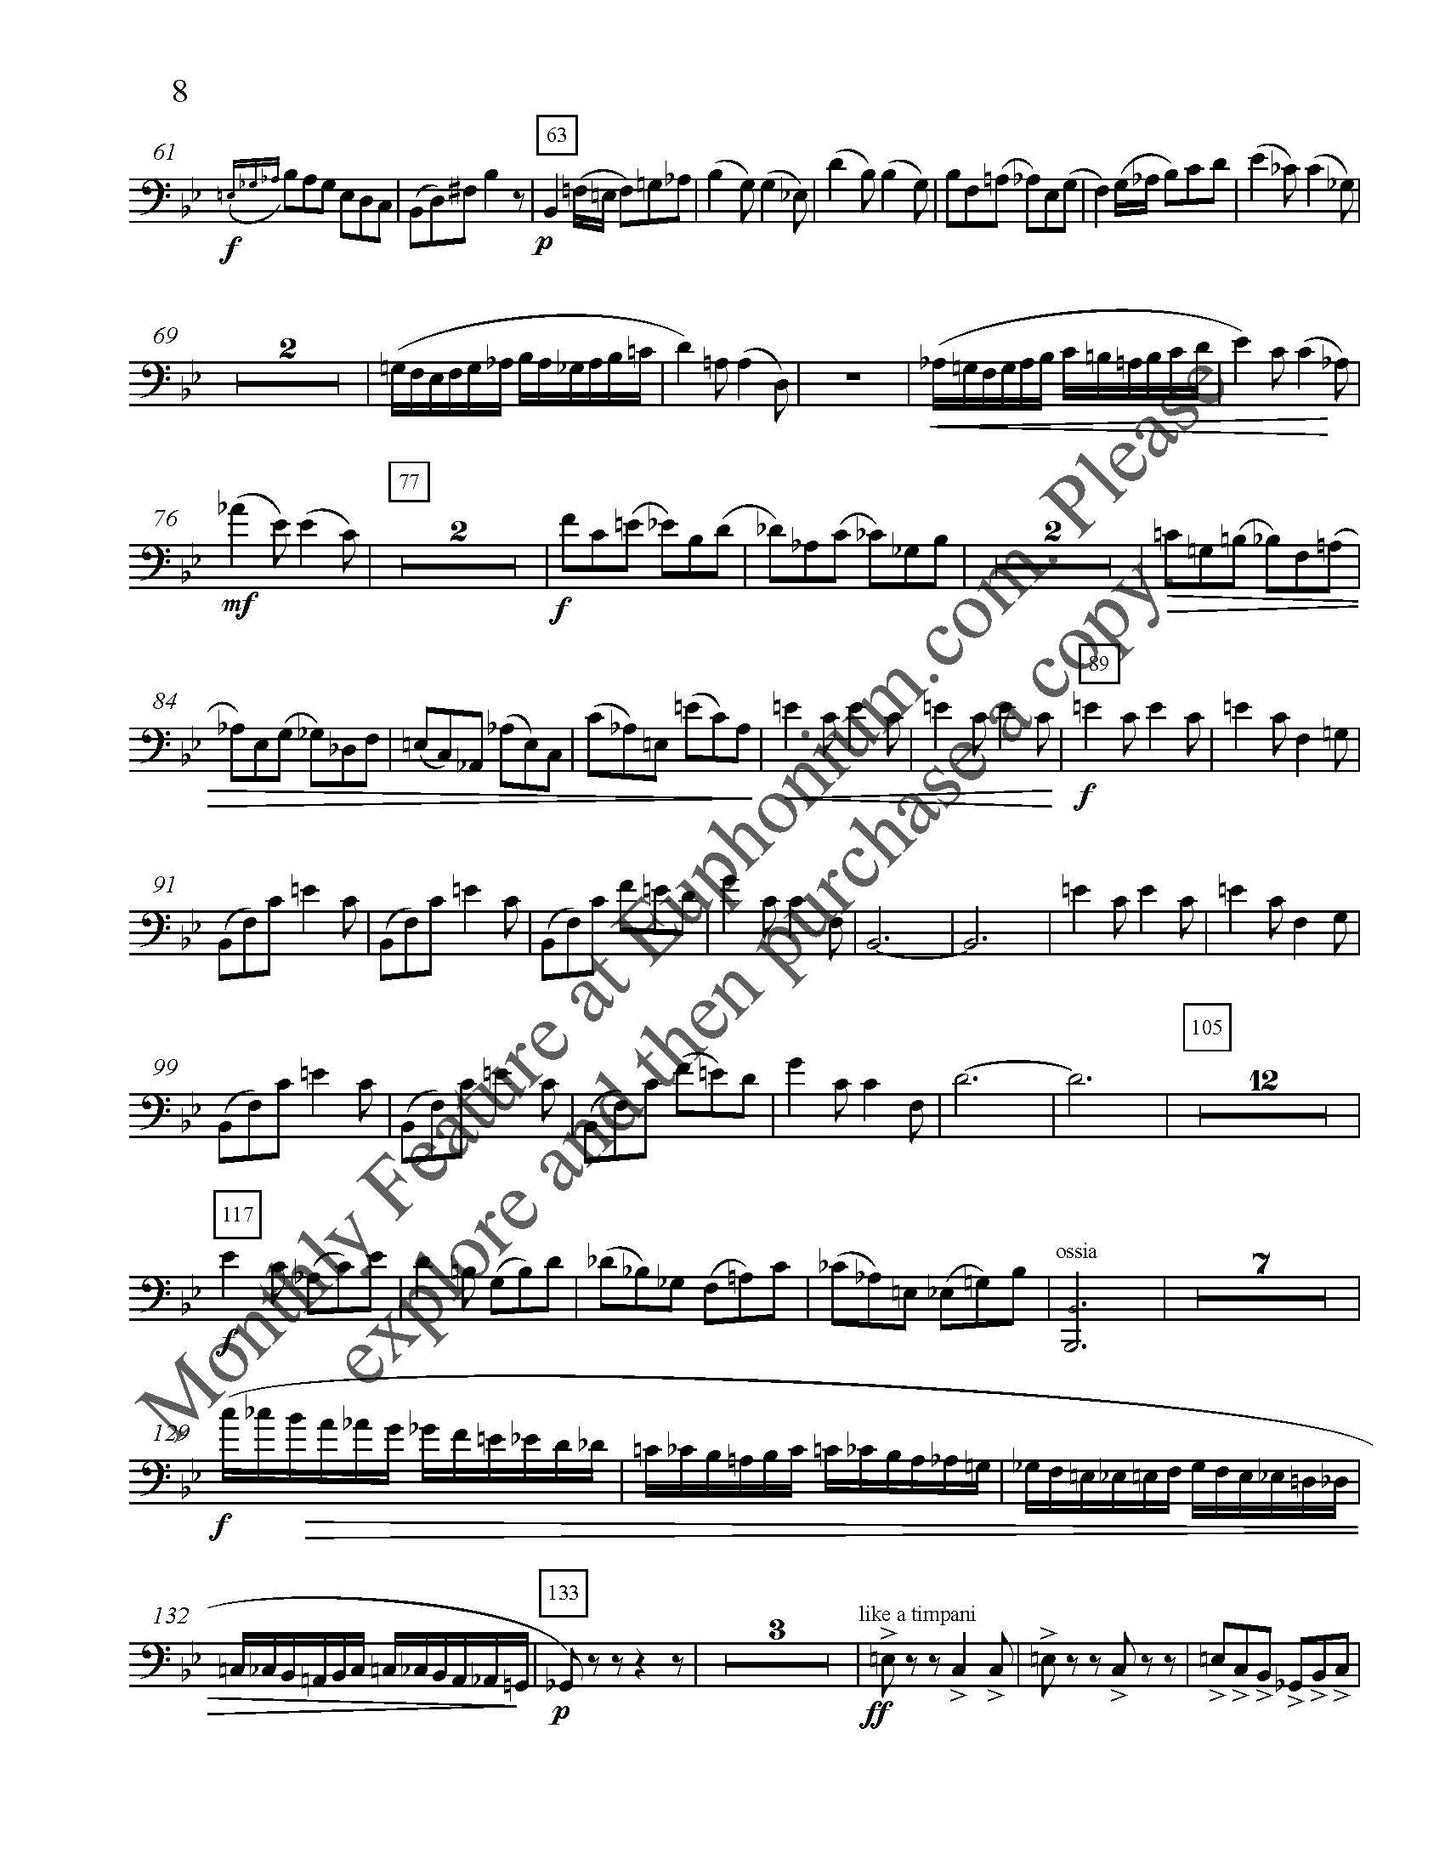 Feinstein, Allen - Concerto for Euphonium DOWNLOAD